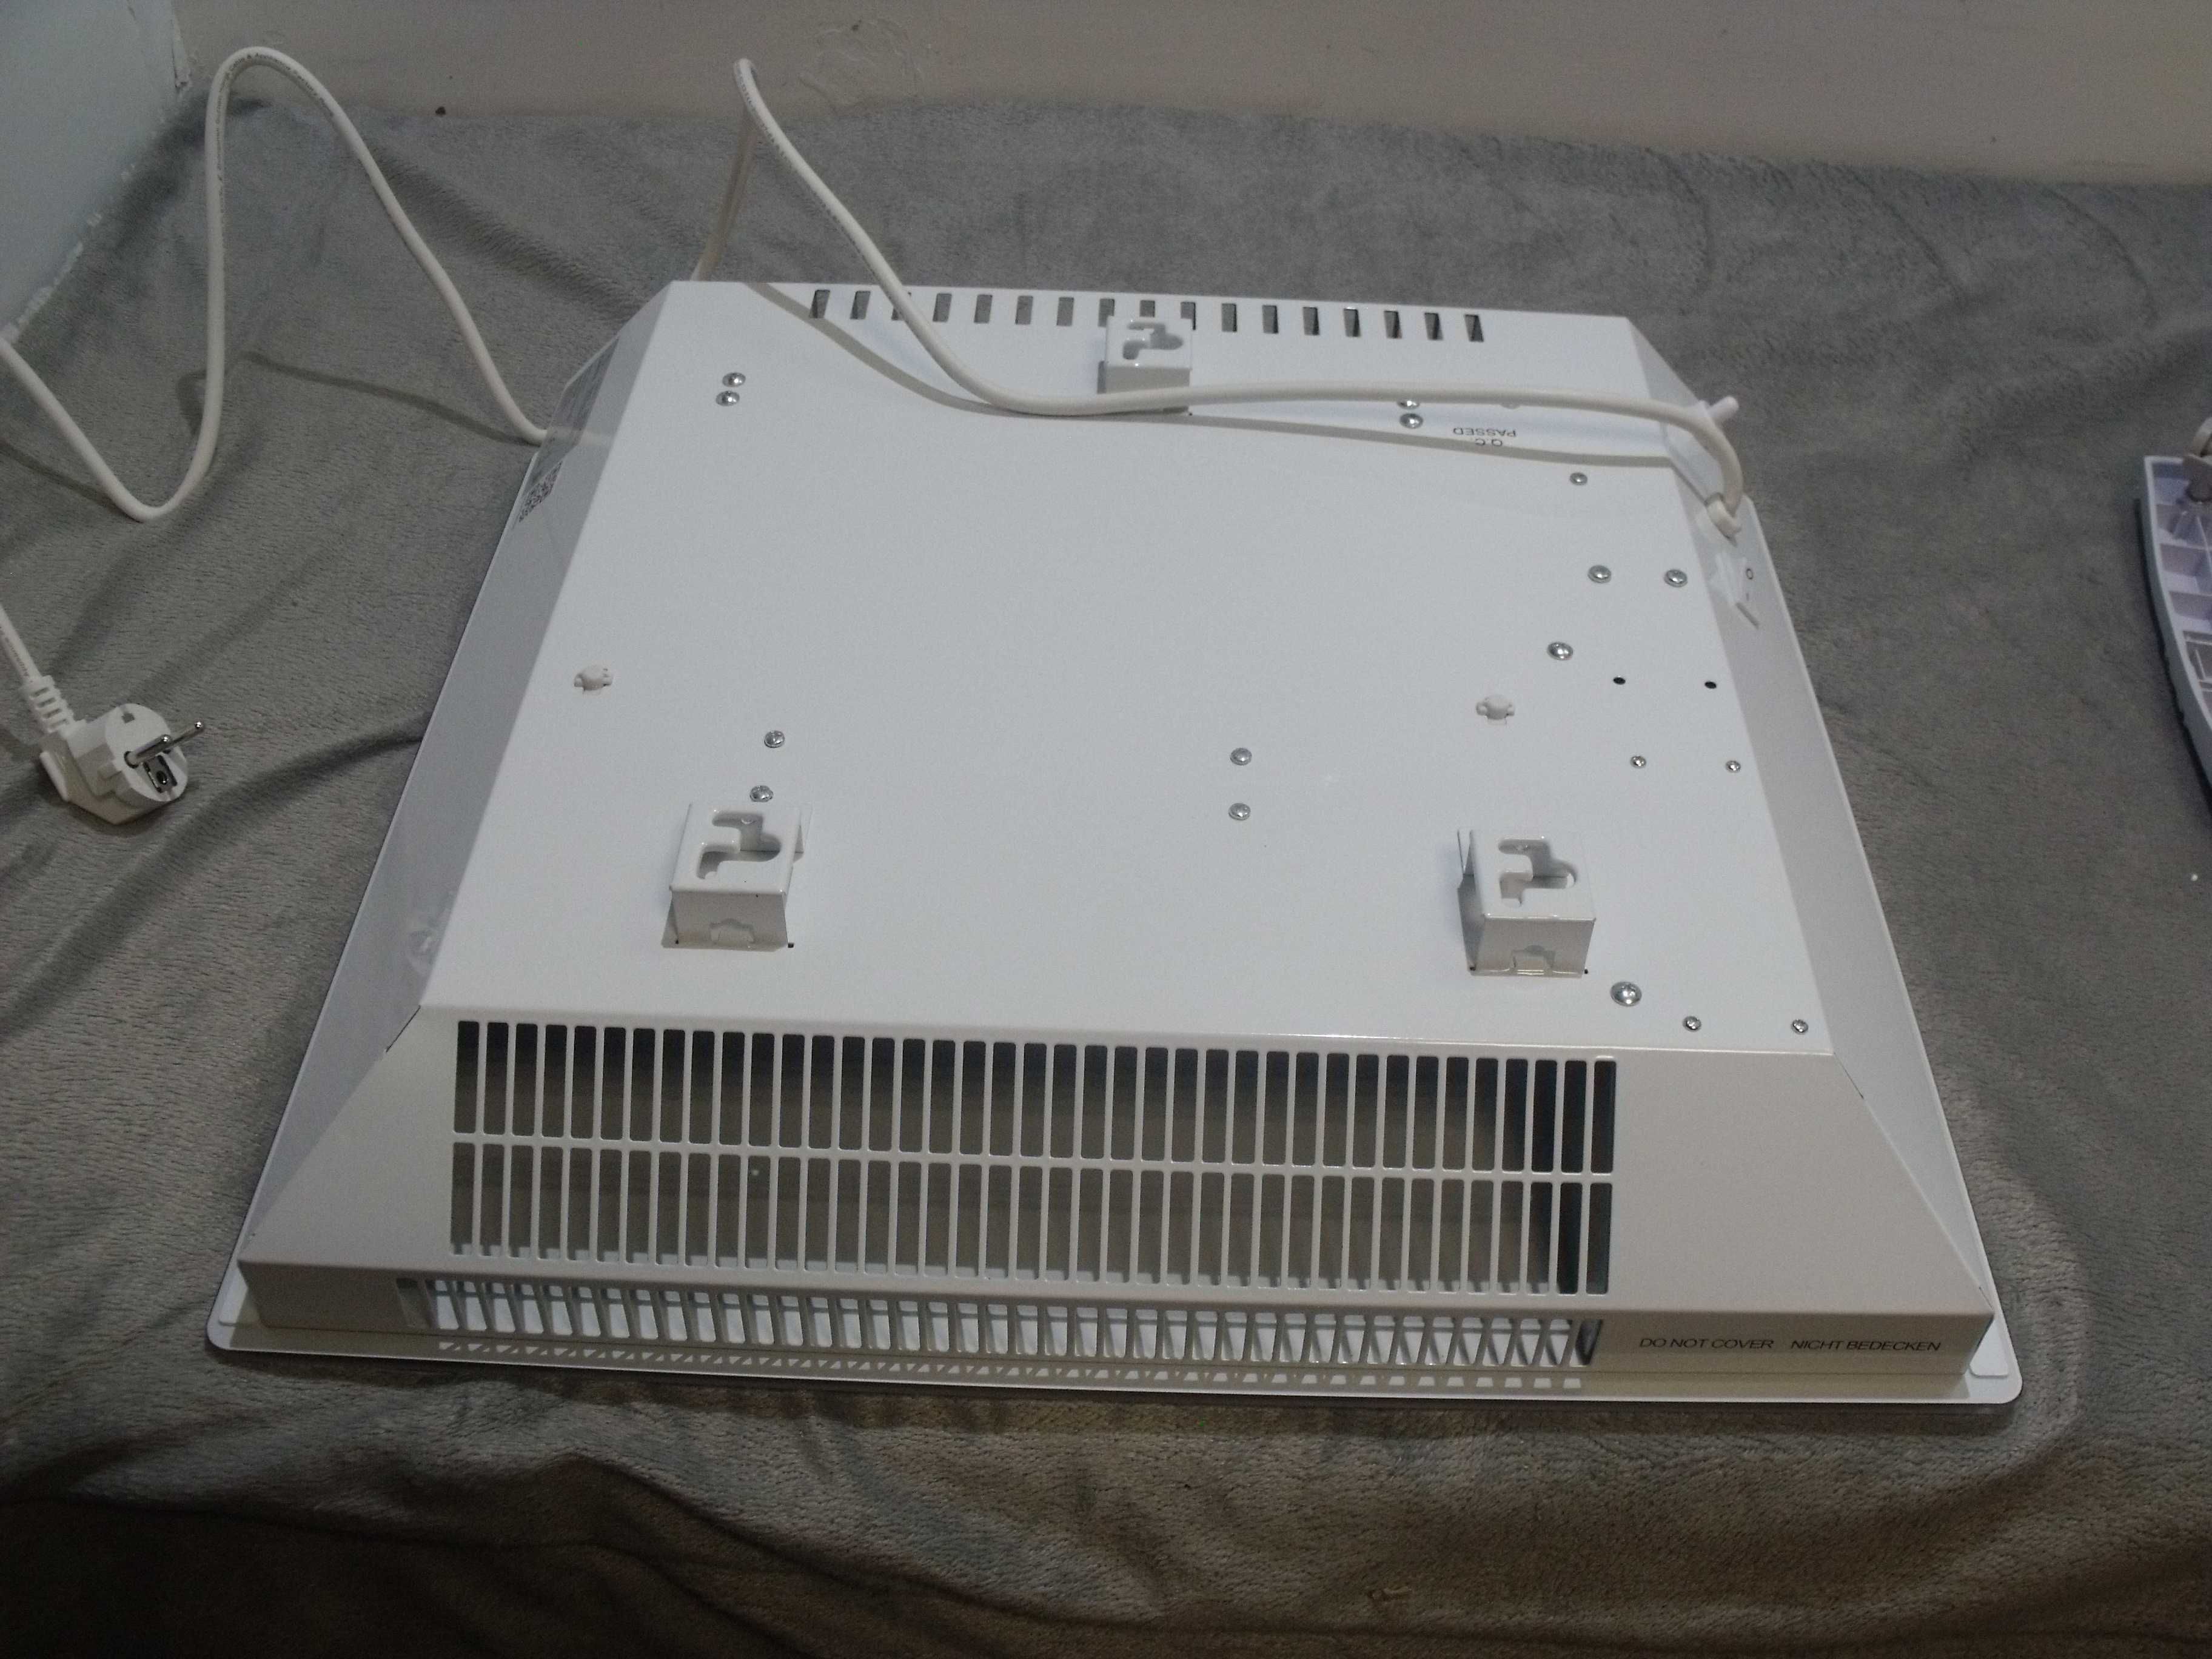 Grzejnik konwekcyjny 1000W termostat do 25 m² Klarstein biały